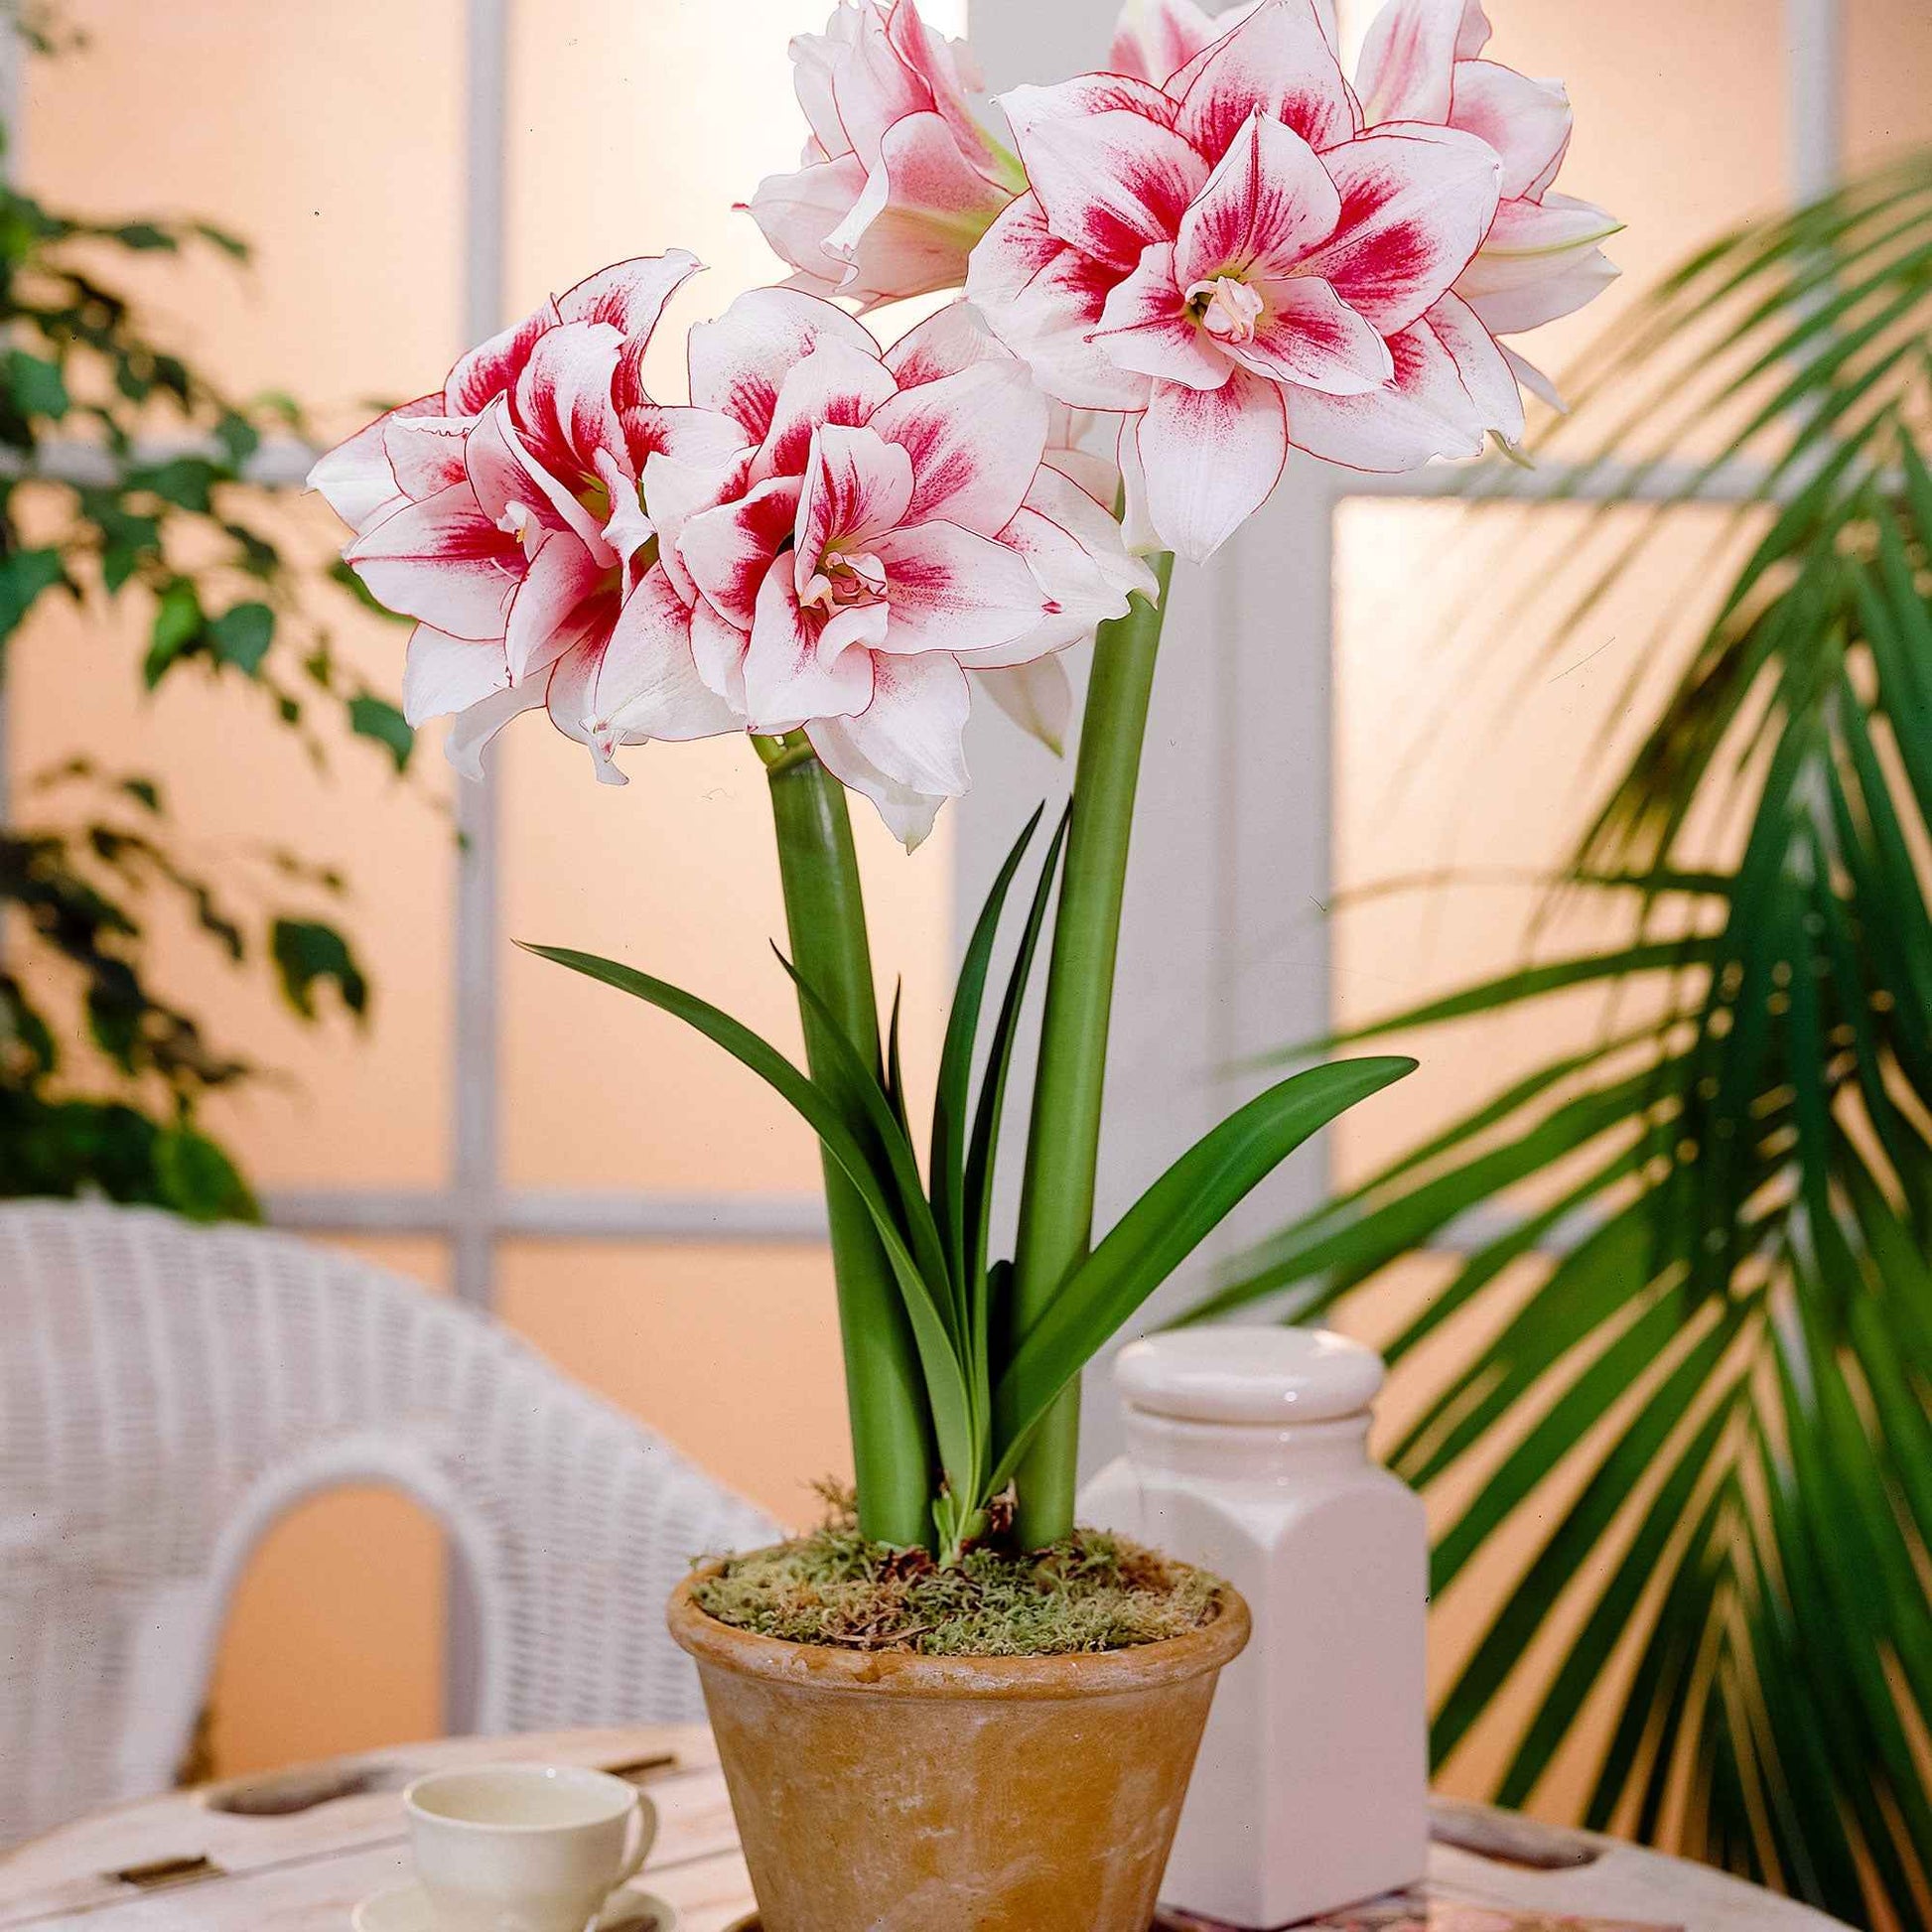 Amaryllis 'Elvas' rot-weiβ - Alle beliebten Blumenzwiebeln